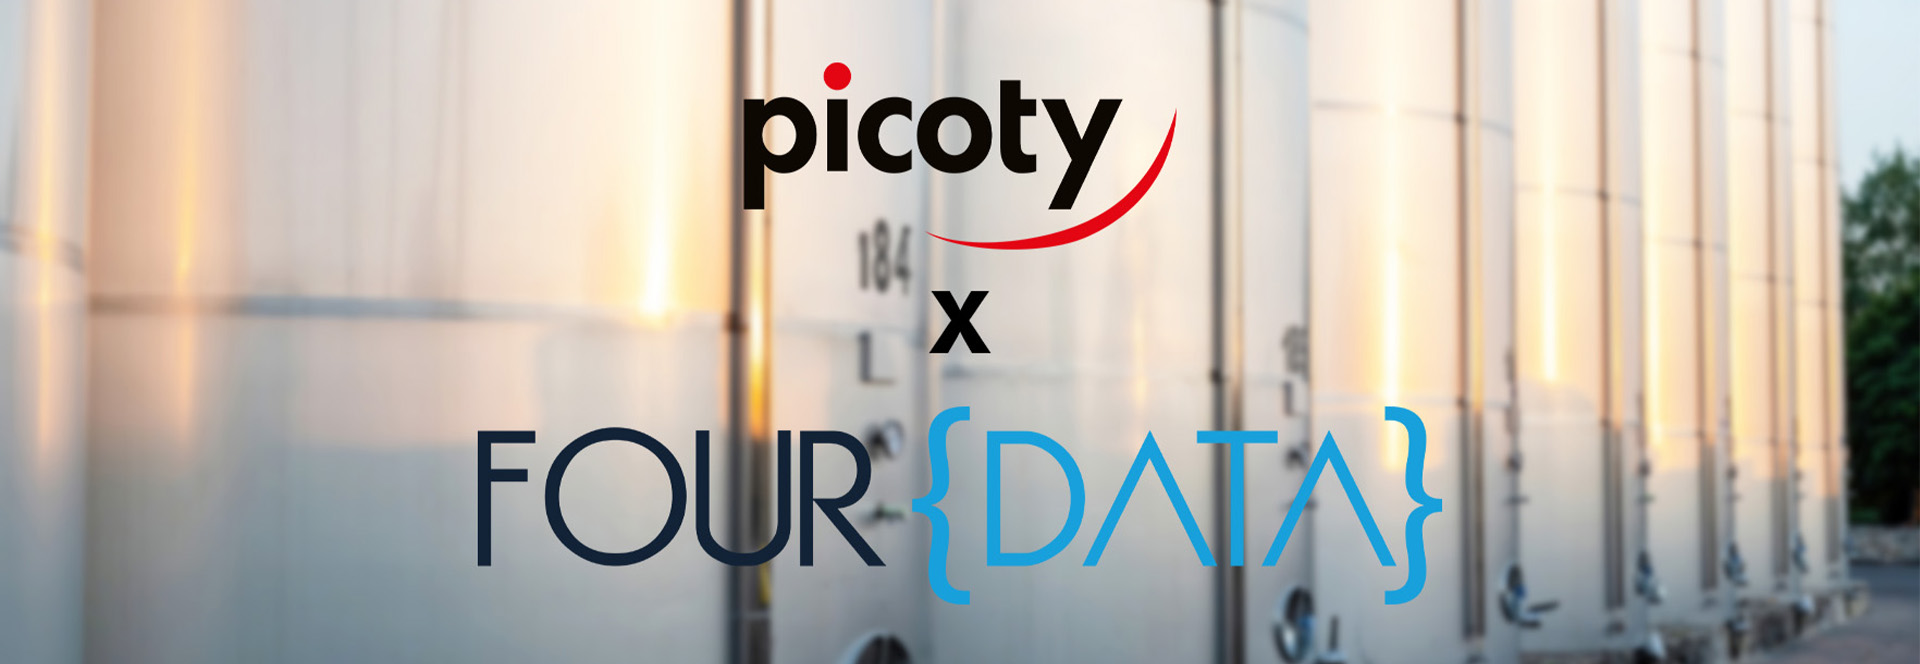 Picoty signe un partenariat avec Four Data pour développer la télémétrie auprès de ses clients